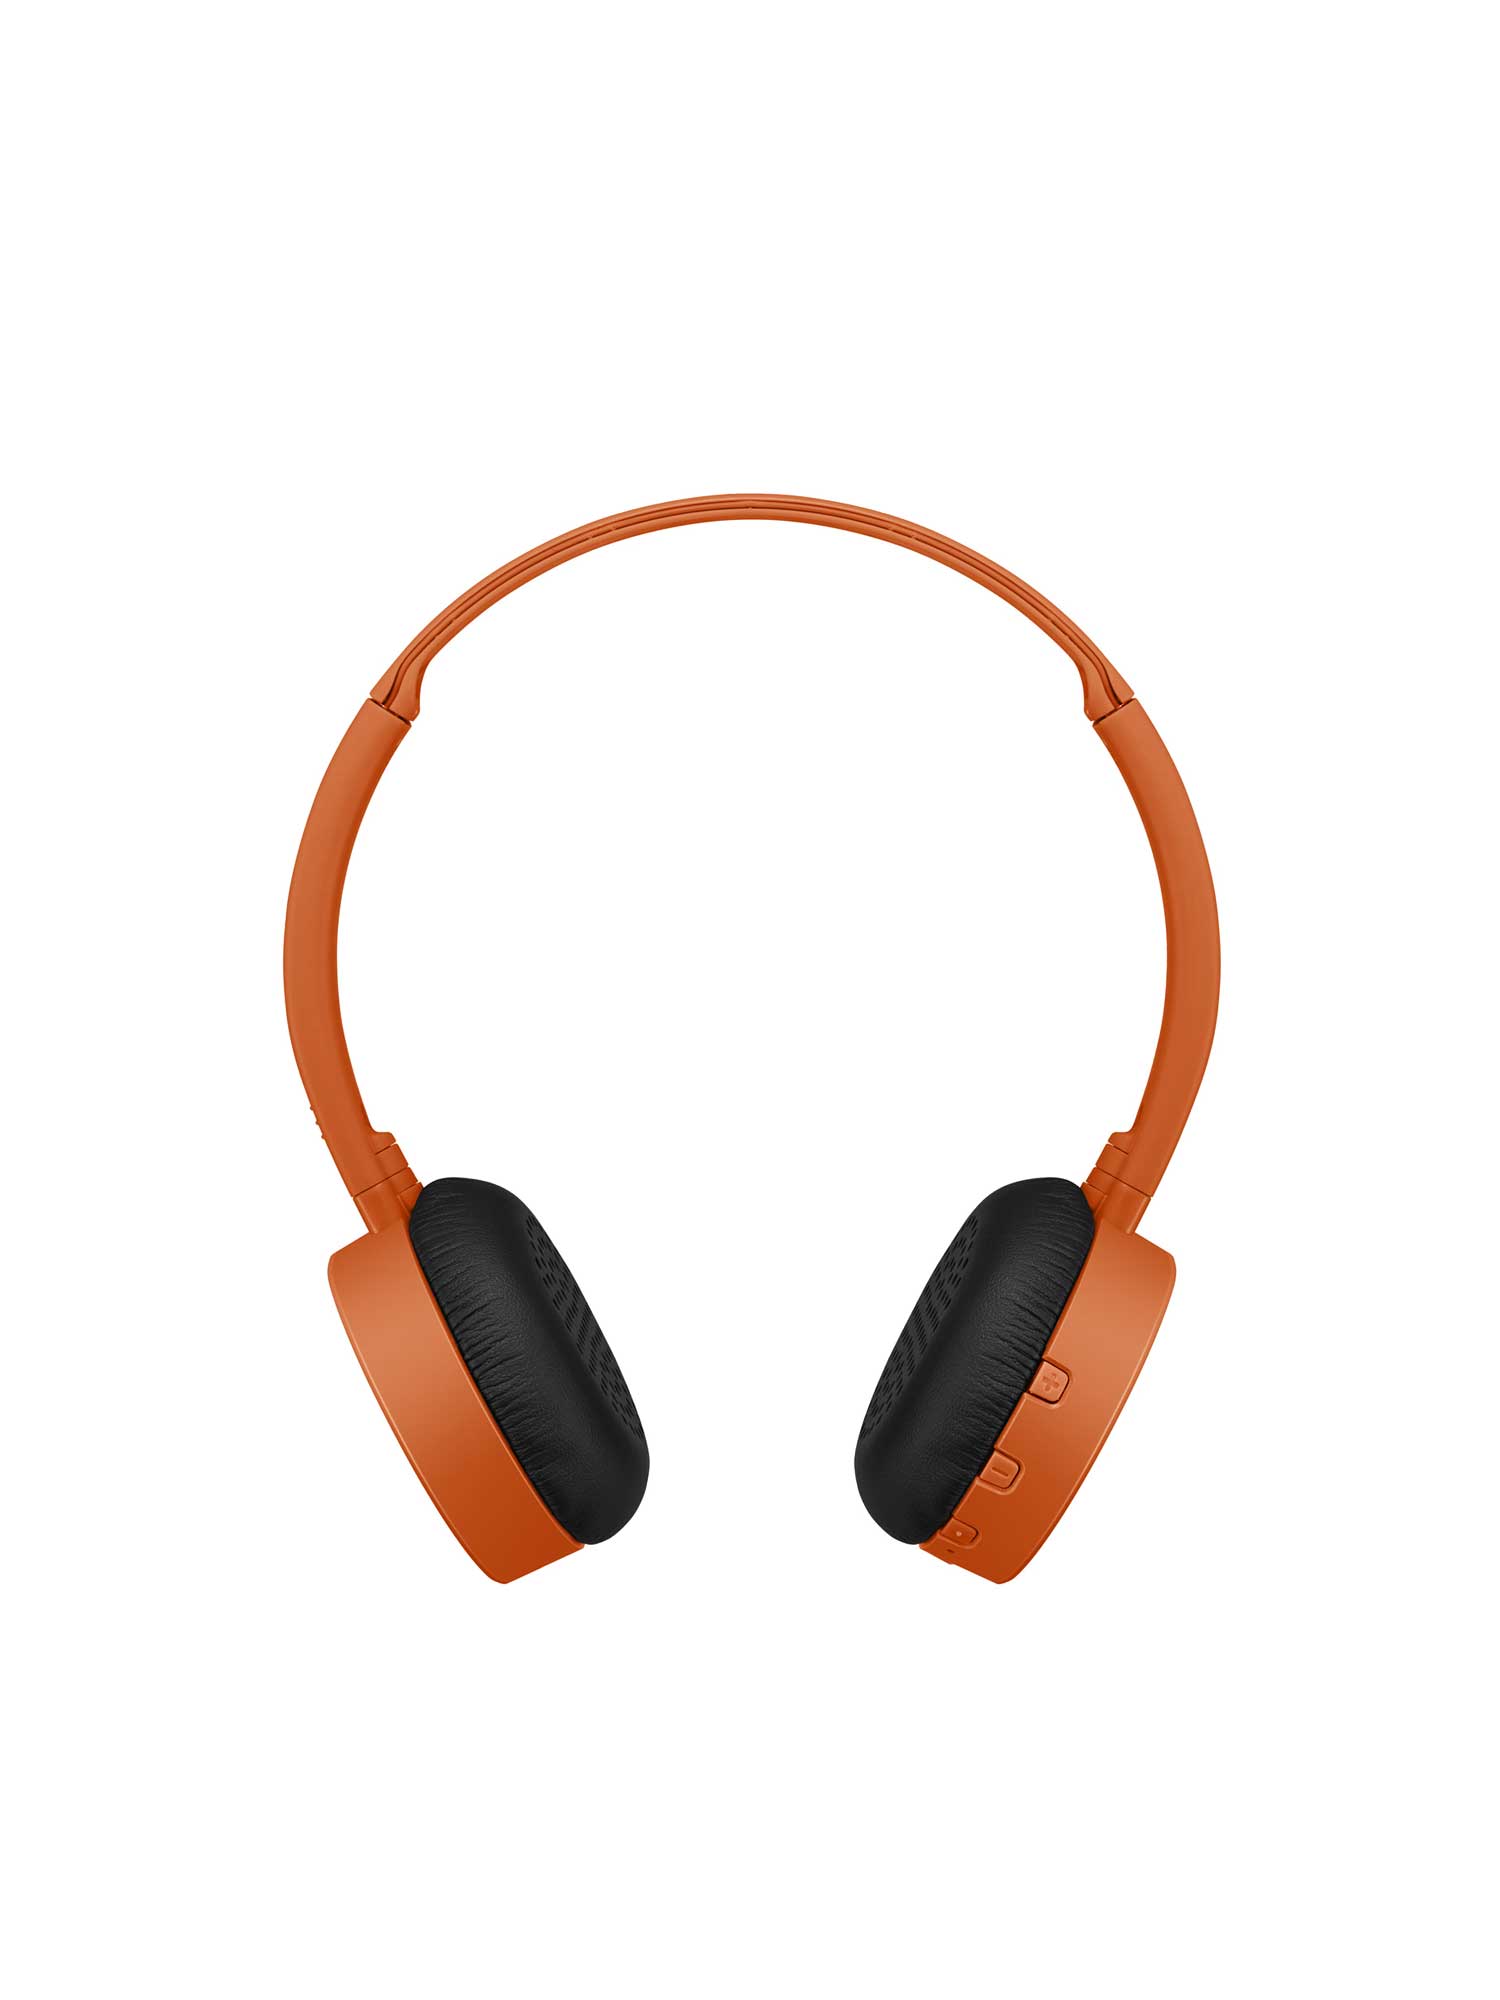 HA-S24W in orange wireless Bluetooth on-ear headphones comfortable fit